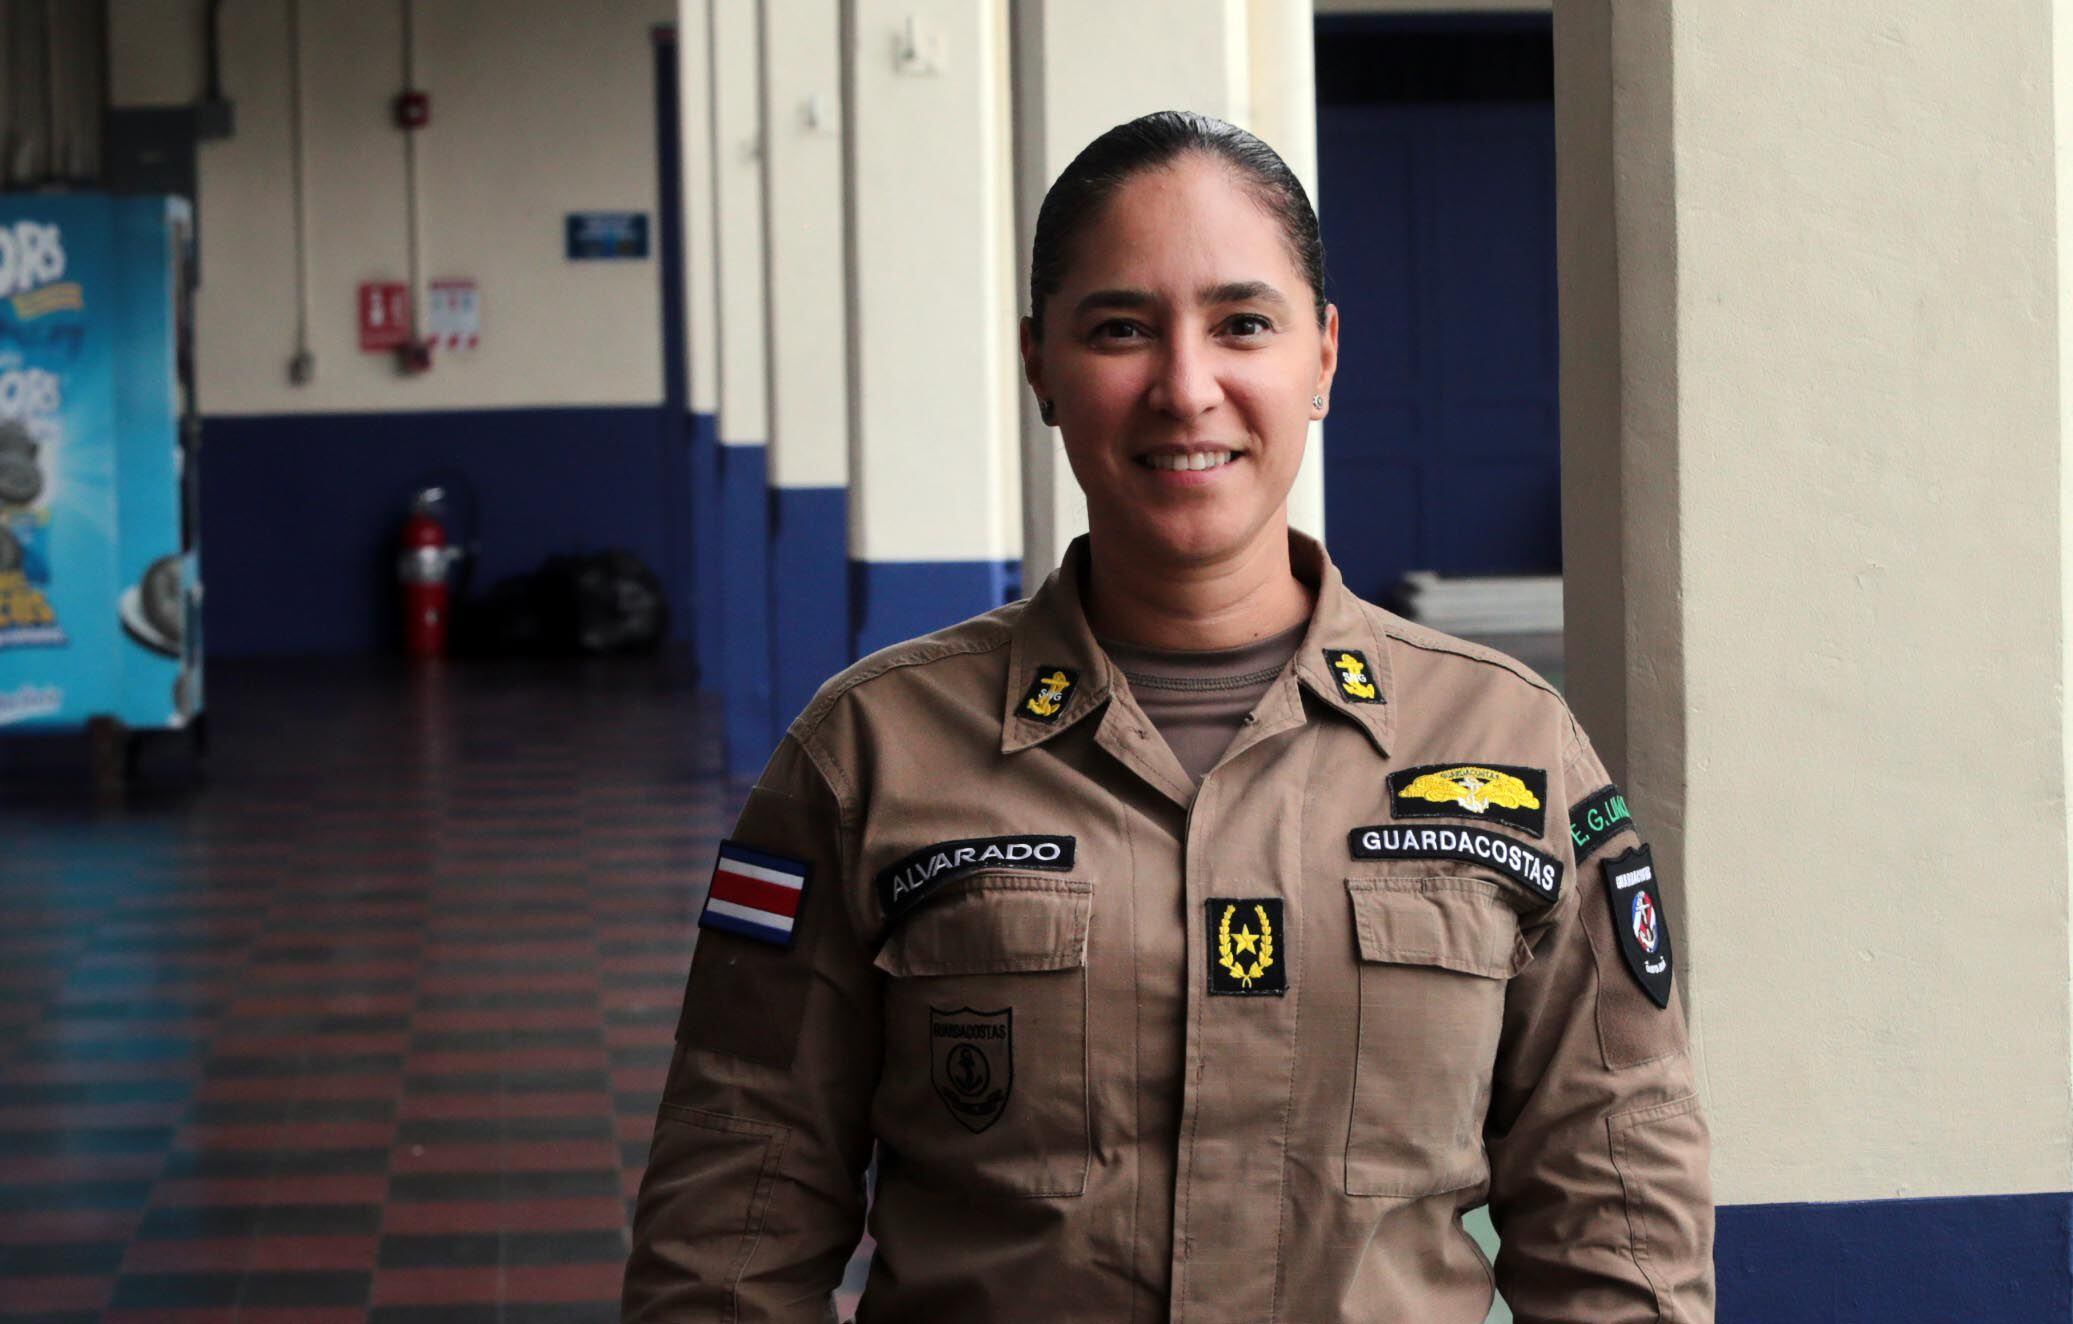 El Ministerio de Seguridad indicó que Cinthya Alvarado renunció al nombramiento como subdirectora de Guardacostas y que mantiene su puesto original como directora en la estación de Limón. Foto: